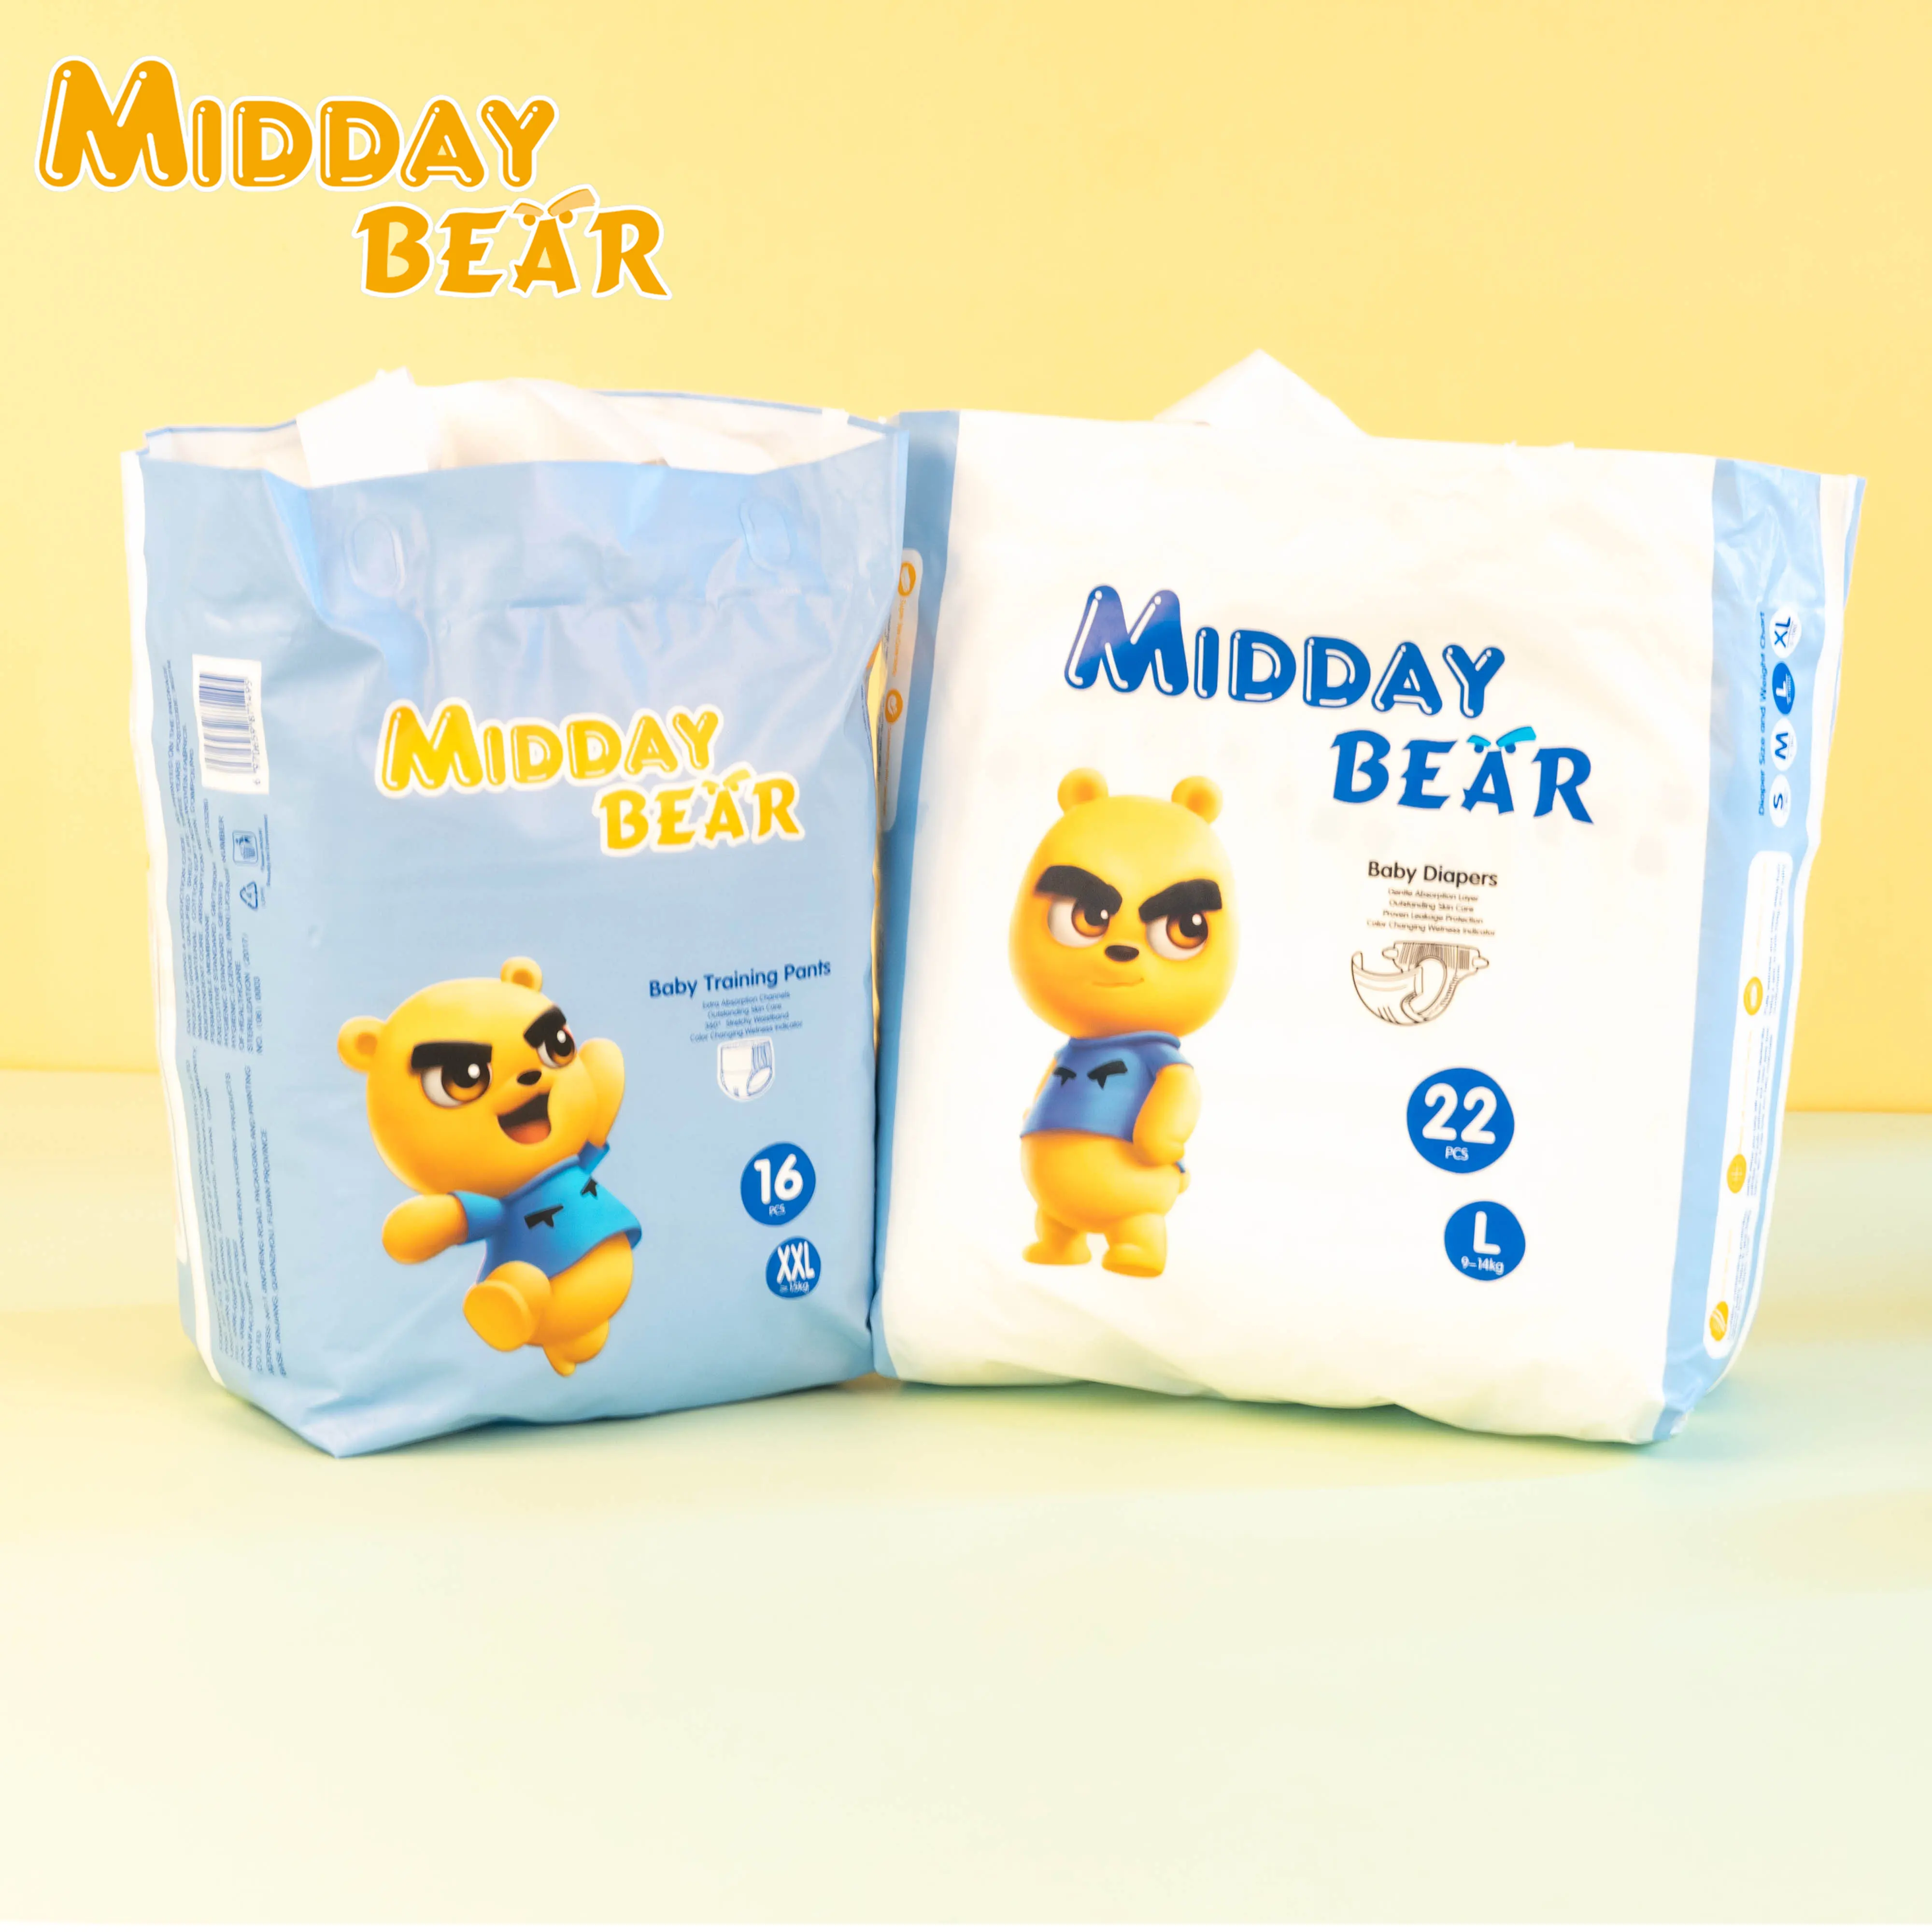 Midday Bear fábrica de pañales sofás dipers cuidado suave pañales coreanos para bebés daipers